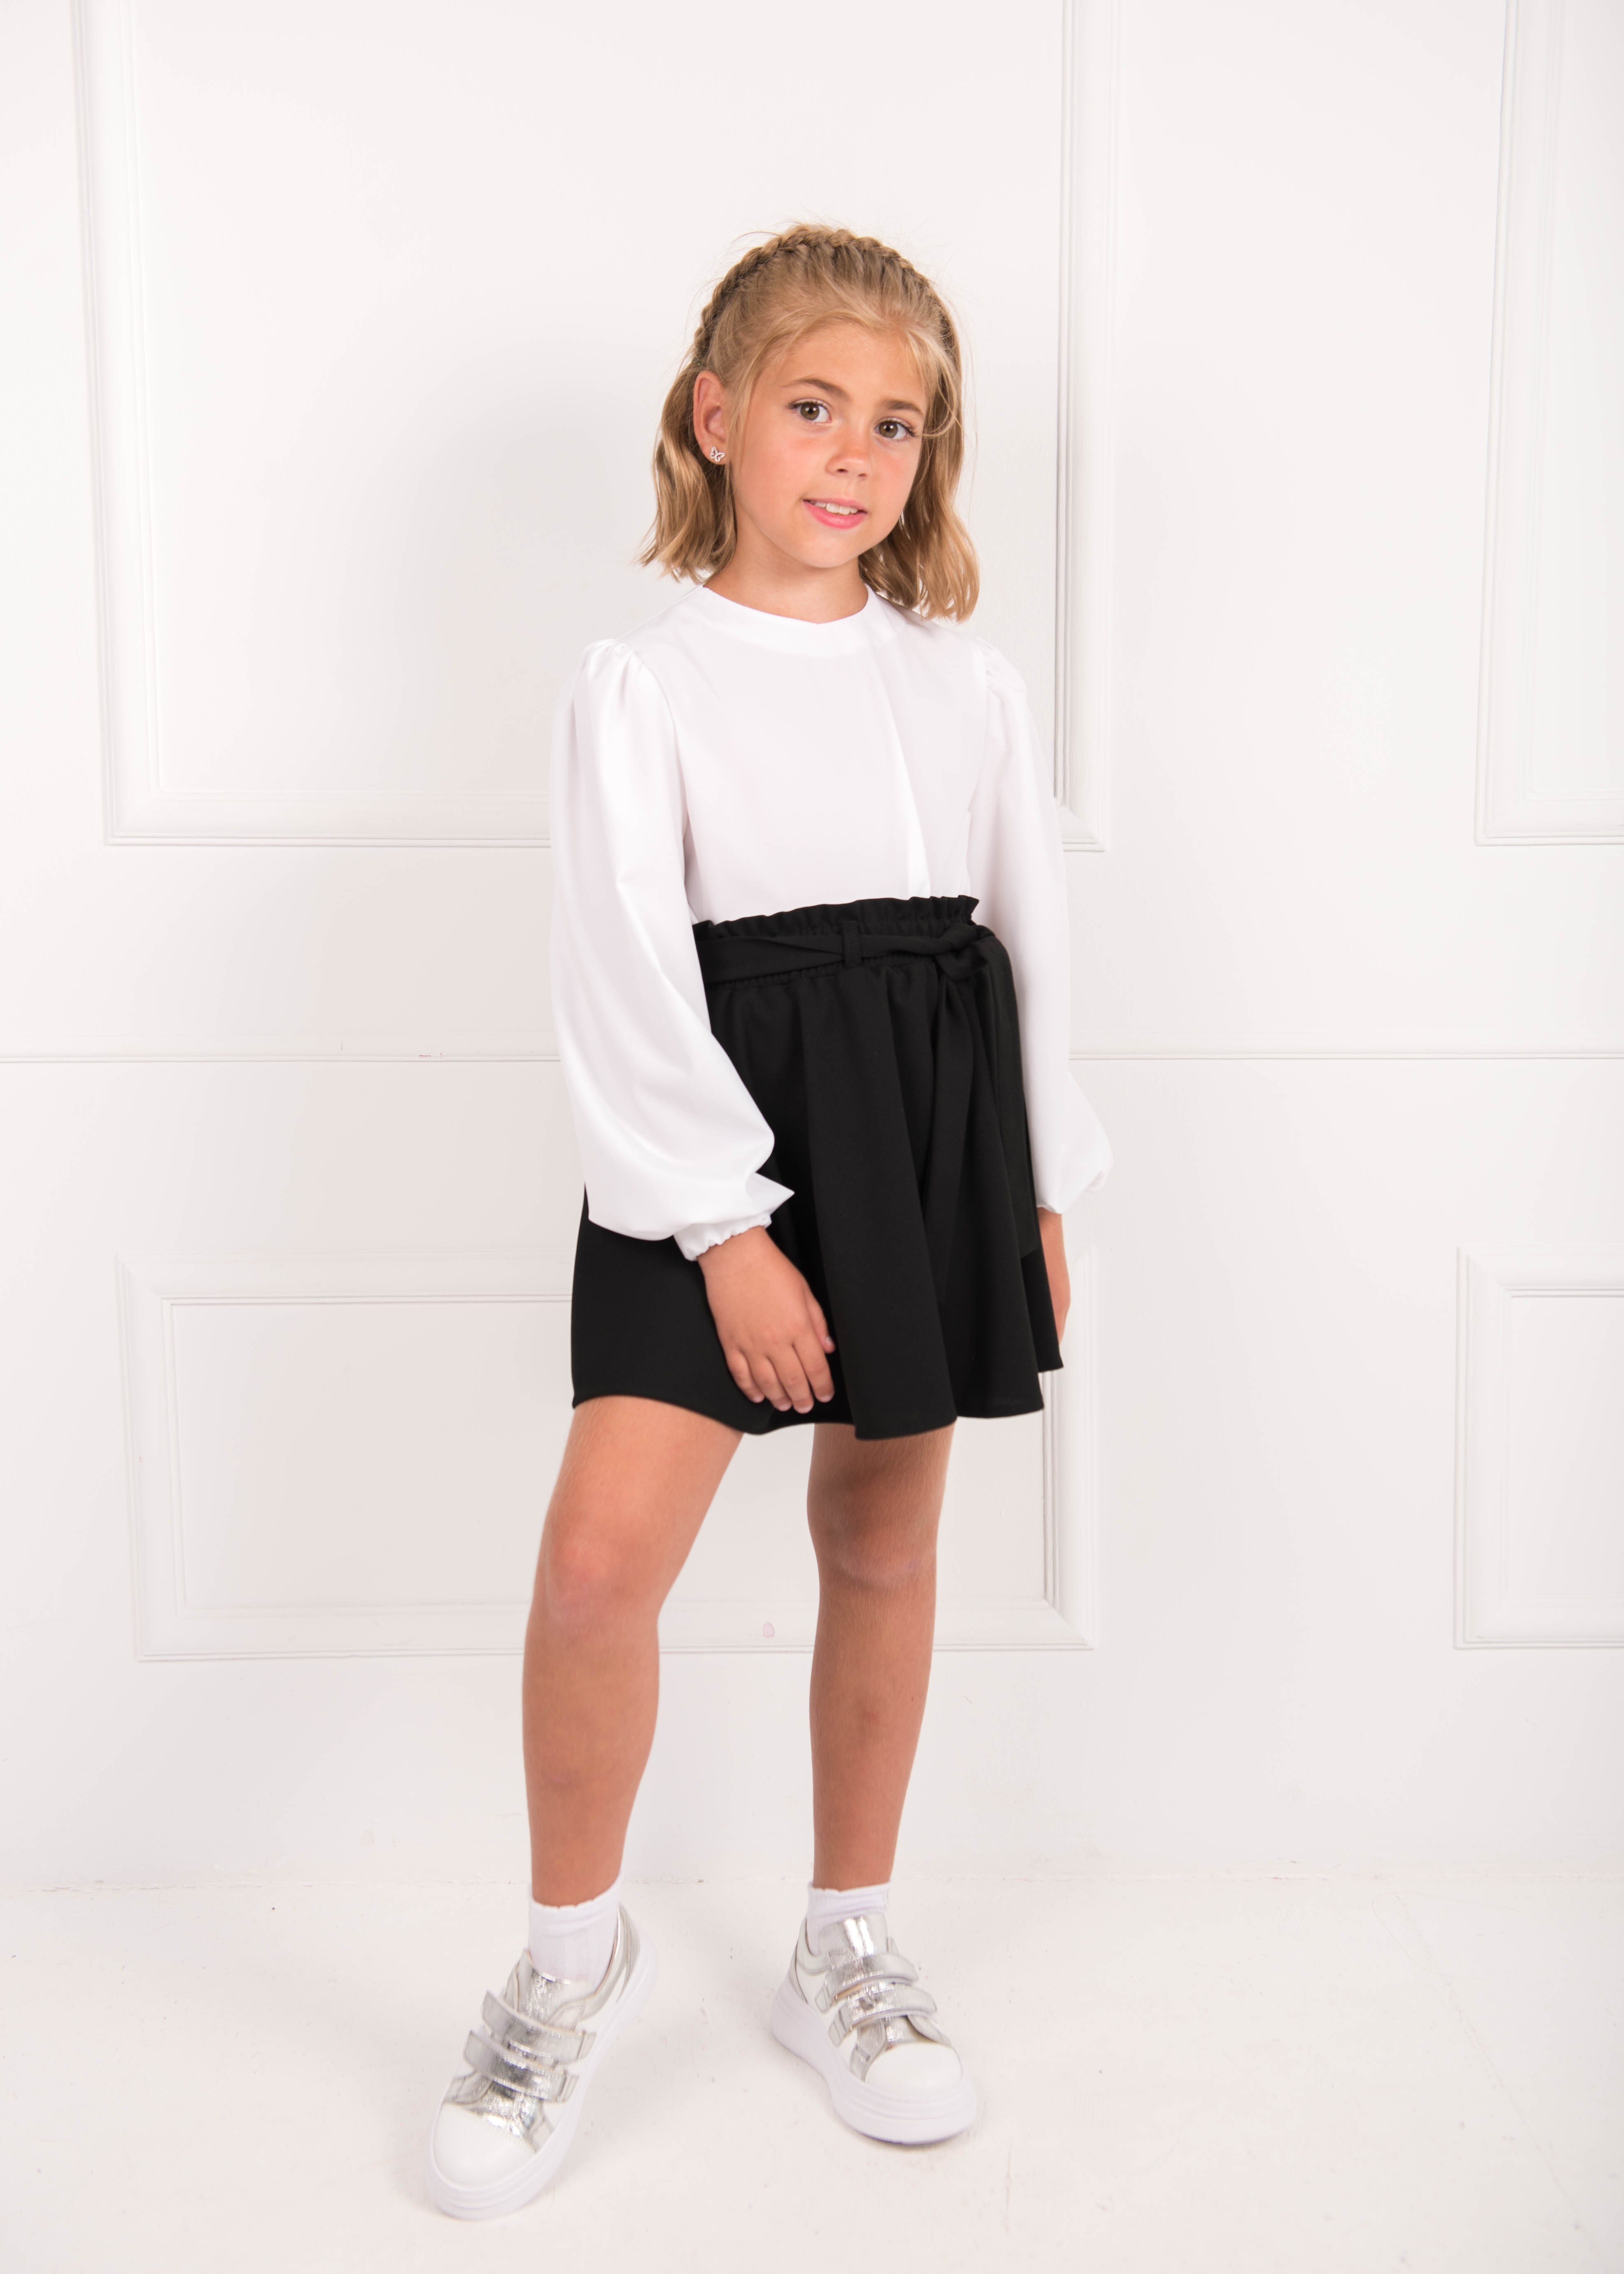 Блуза с длинным рукавом для девочки белая 02681 в интернет-магазине